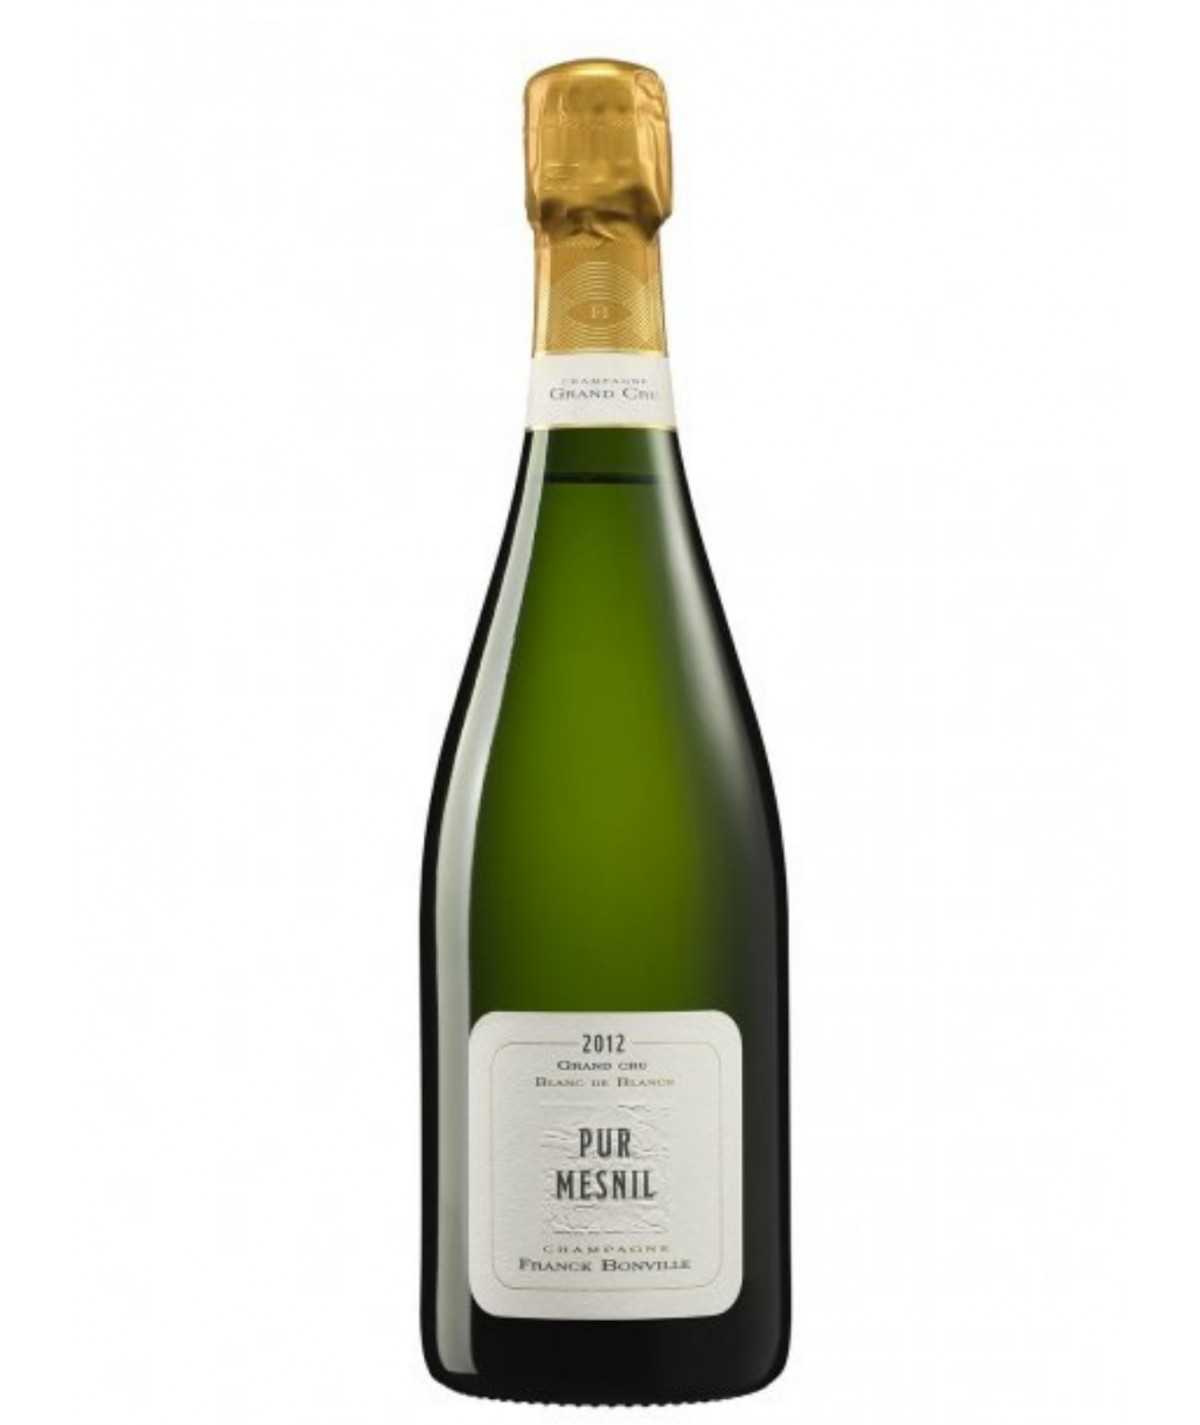 Champagne FRANCK BONVILLE Pur “Mesnil Grand Cru” Blanc de Blancs